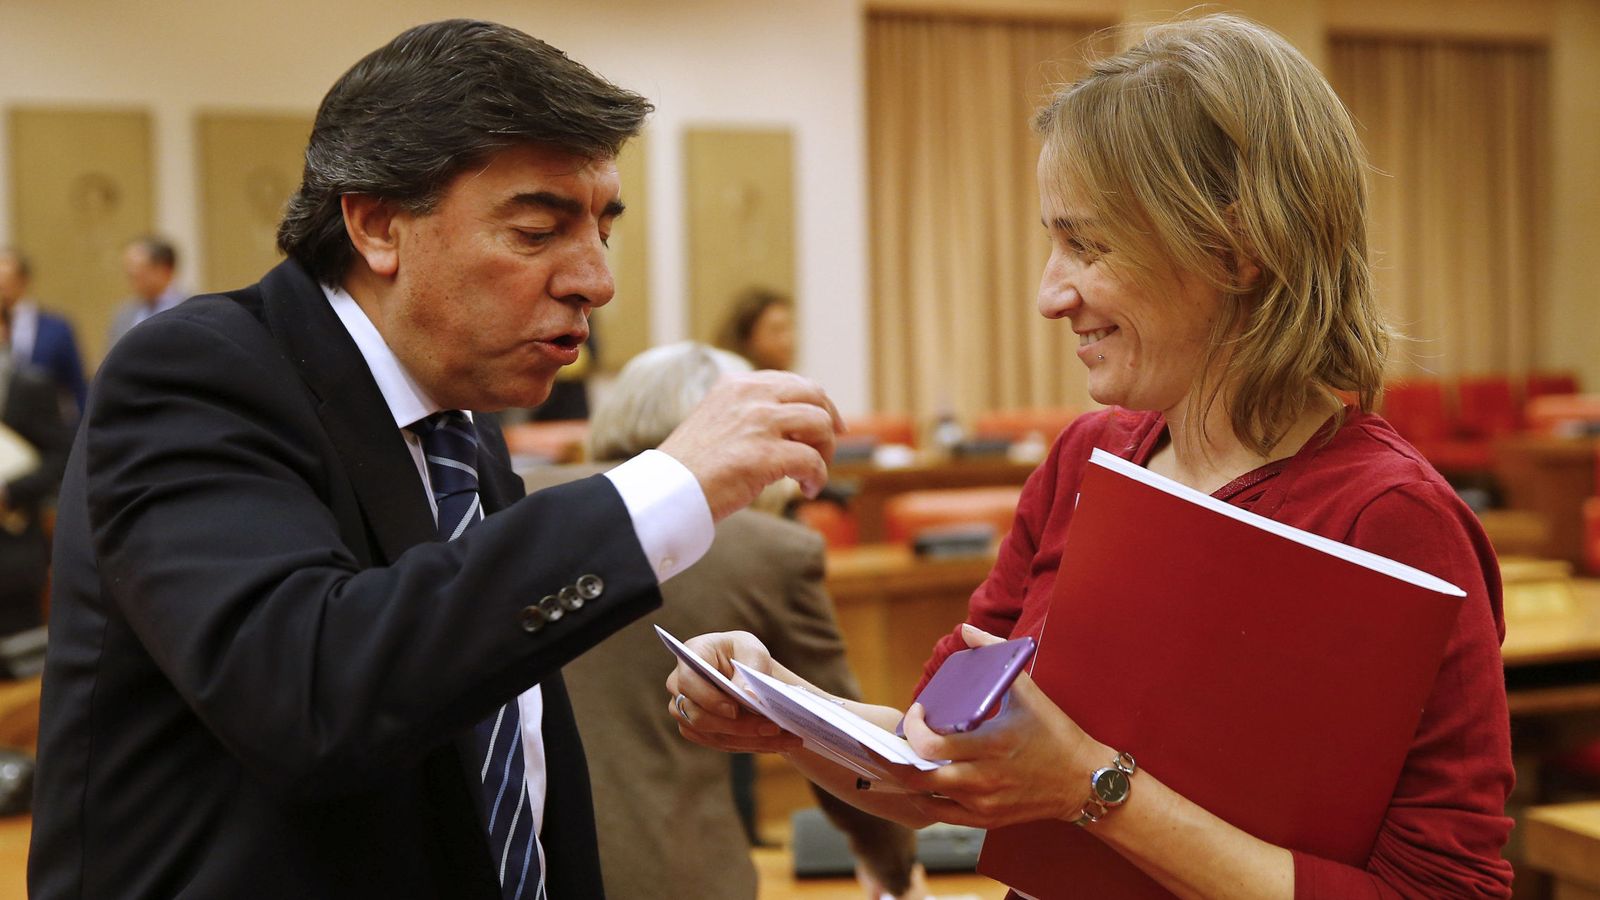 Foto: La diputada de Podemos Tania Sánchez conversa con el parlamentario del PP José Antonio Bermúdez de Castro durante la sesión constitutiva de una comisión. (EFE)